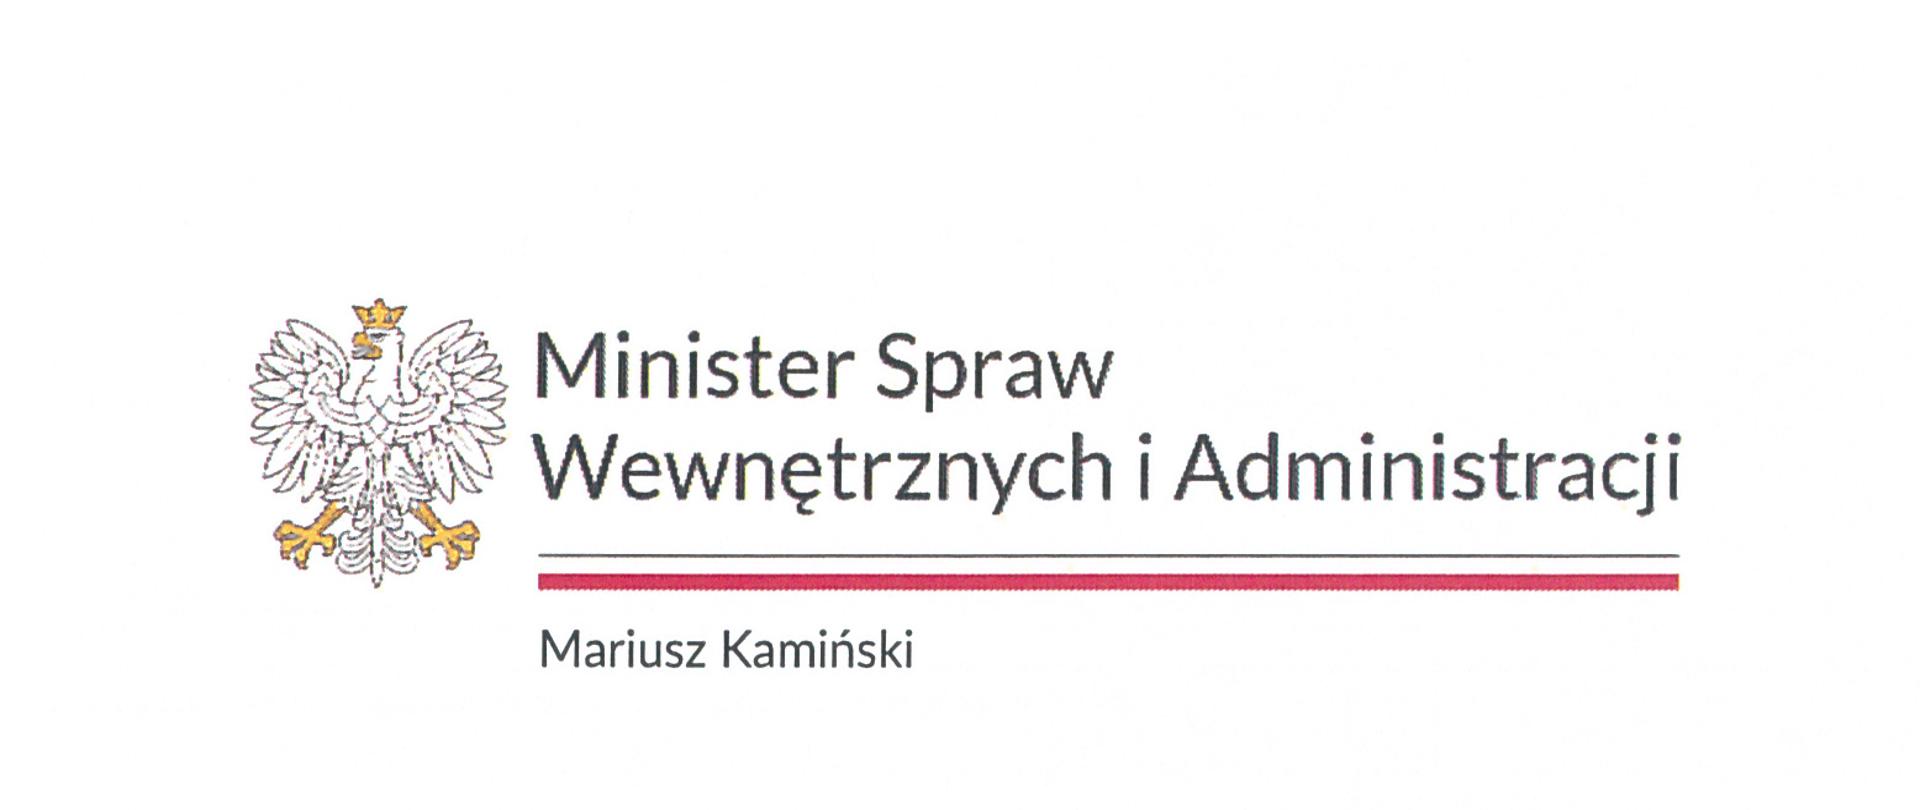 Po lewej stronie widoczny logotyp Godło Polski, obok napis Minister Spraw Wewnętrznych i Administracji, poniżej biało czerwona linia, poniżej Mariusz Kamiński.